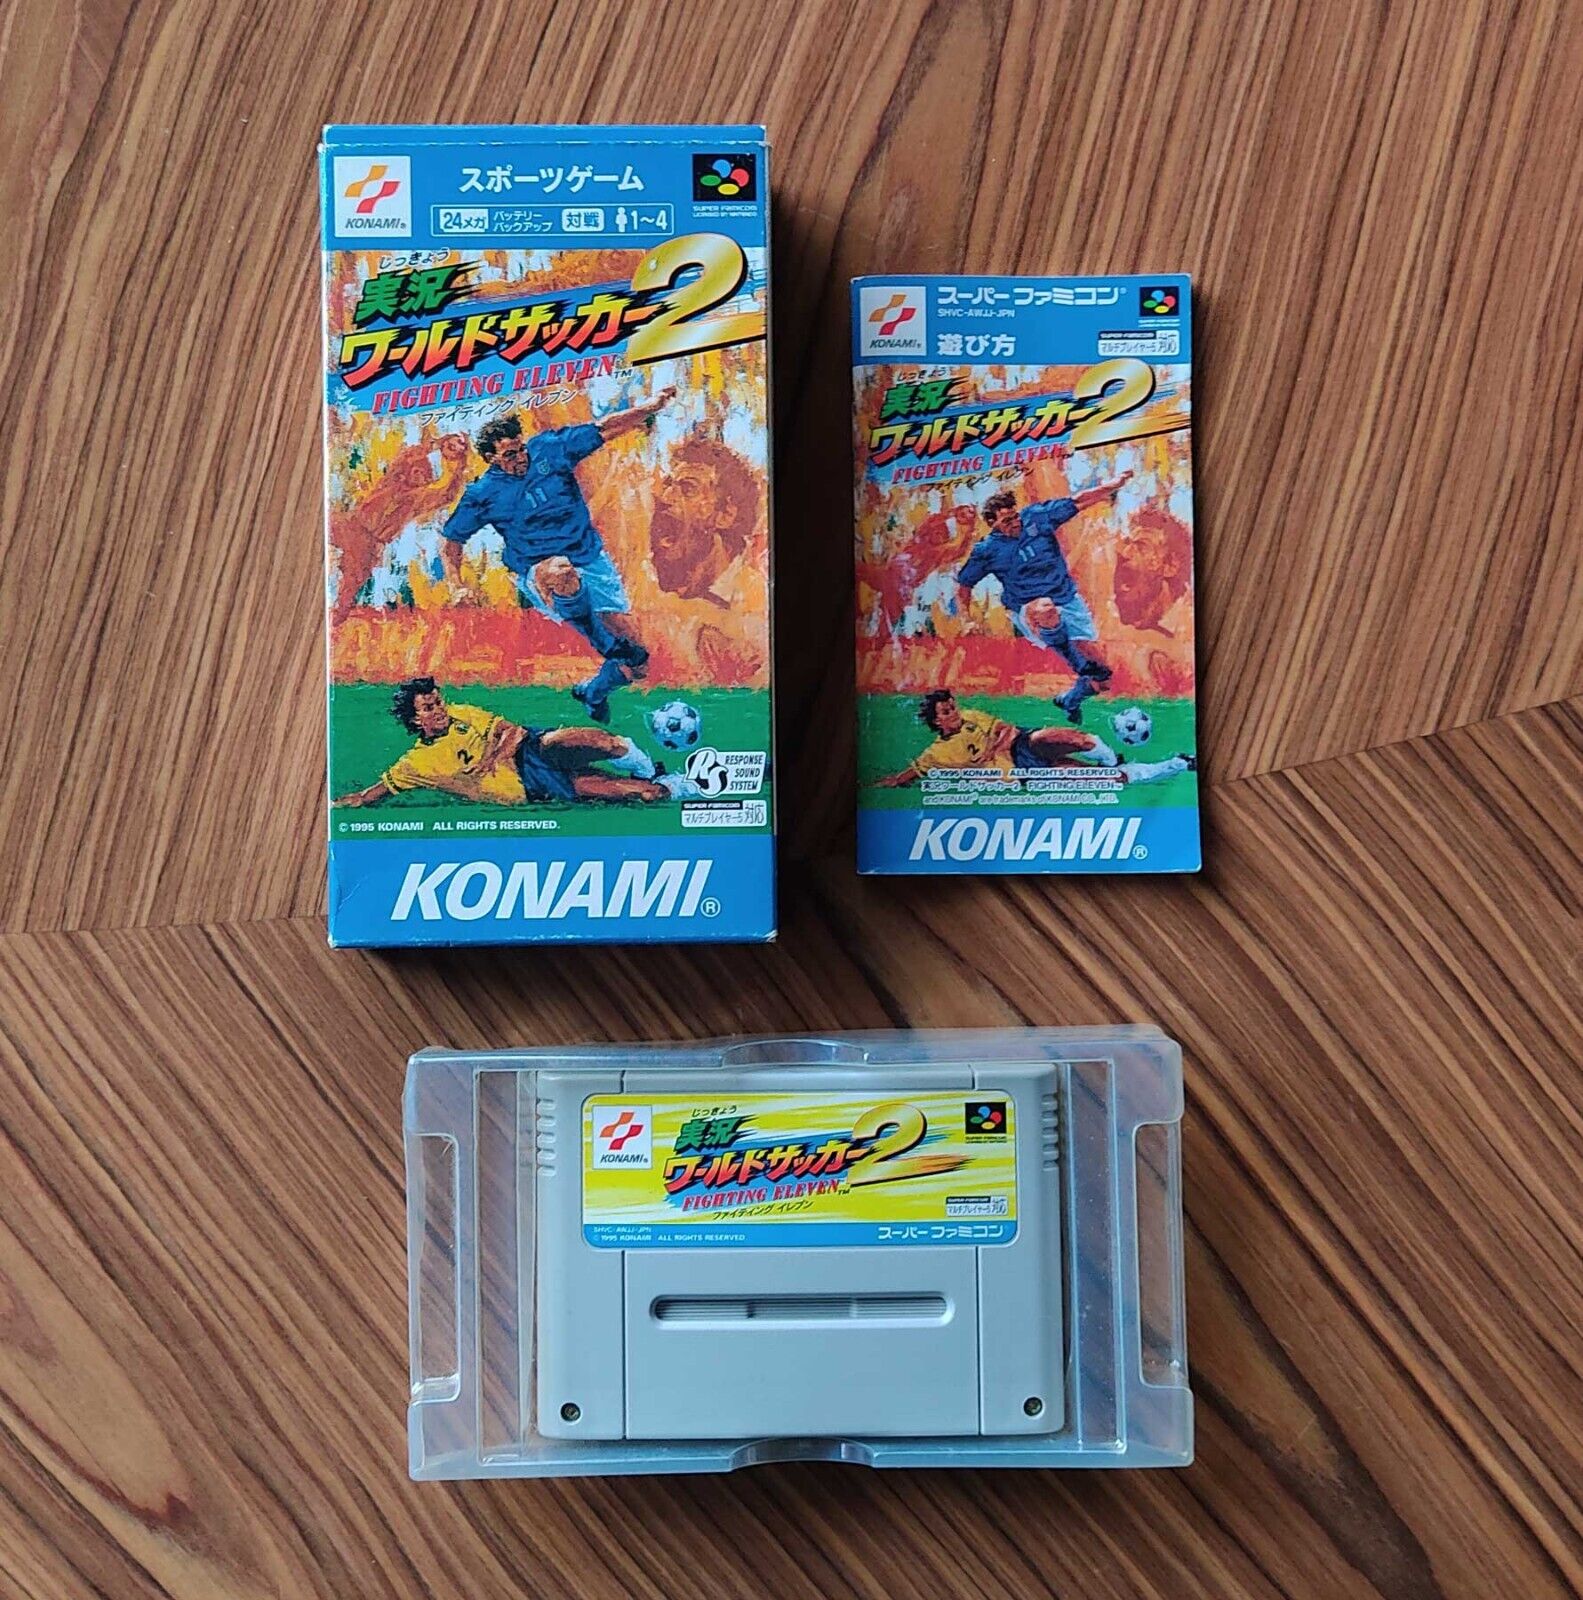 Fighting Eleven 2 Super Famicom Snes Japon International Superstar Soccer Konami